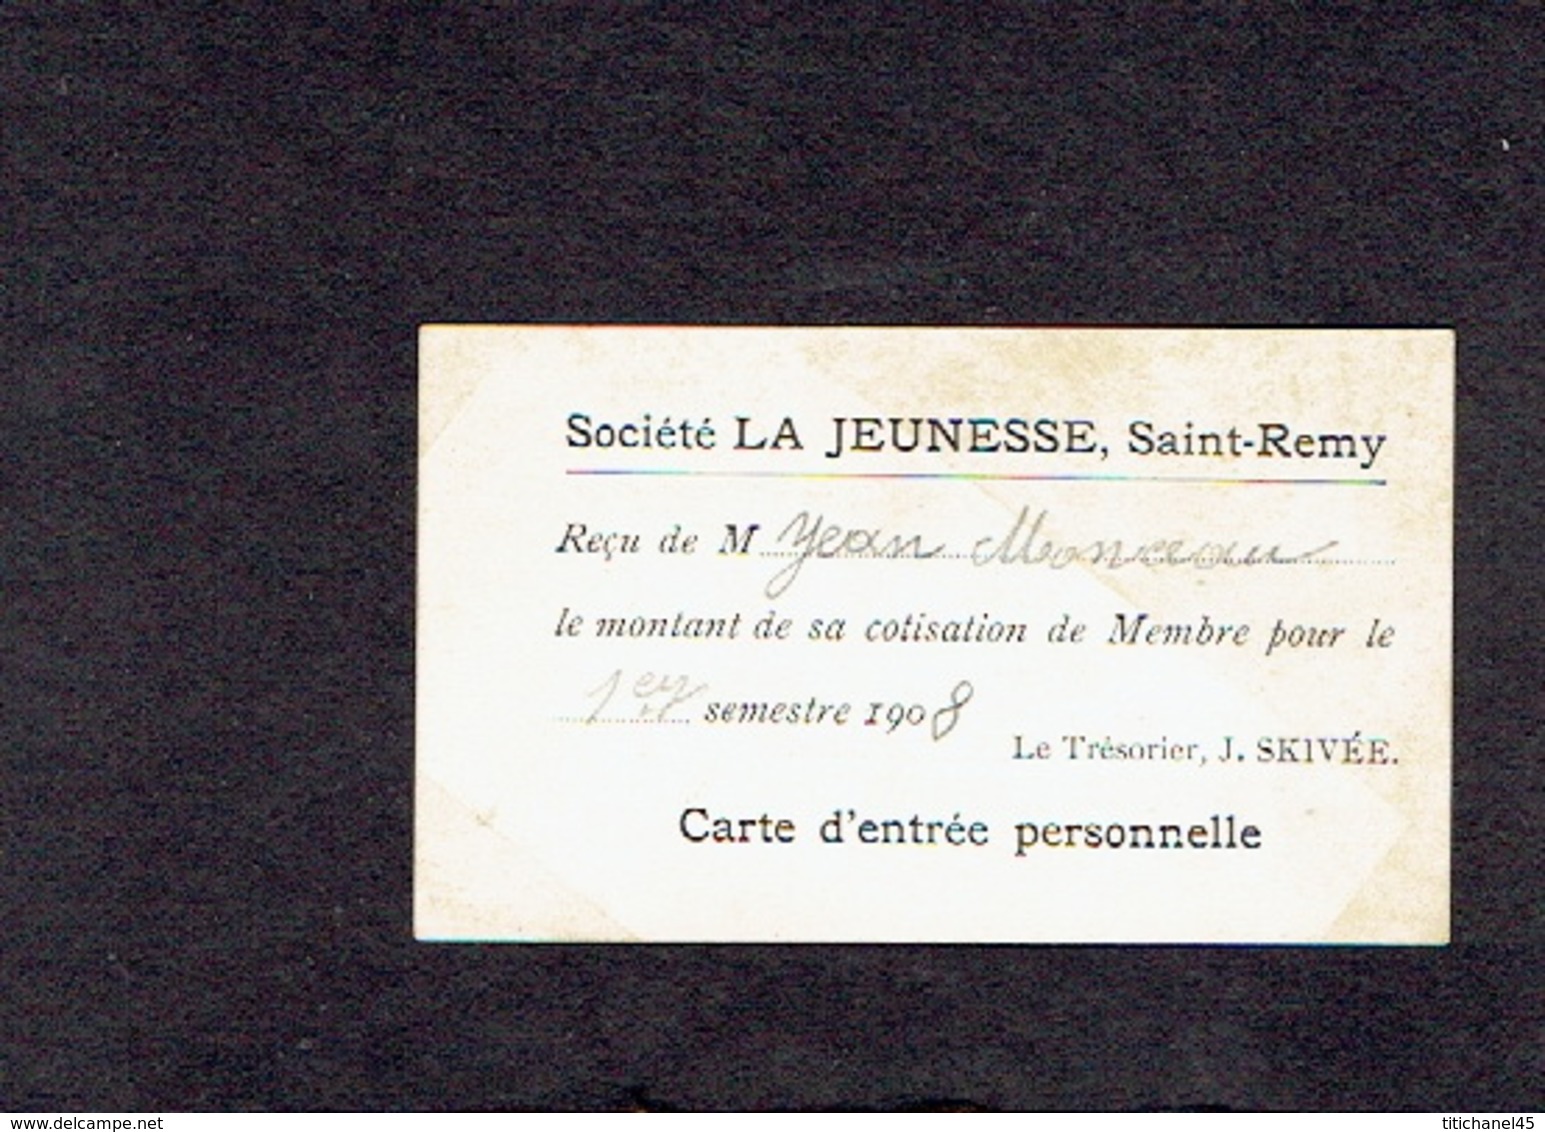 SAINT-REMY - Carte De Membre De 1908 De La Société LA JEUNESSE, SAINT-REMY - Reçu Le Montant Cotisation 1er Sem. 1908 - Membership Cards